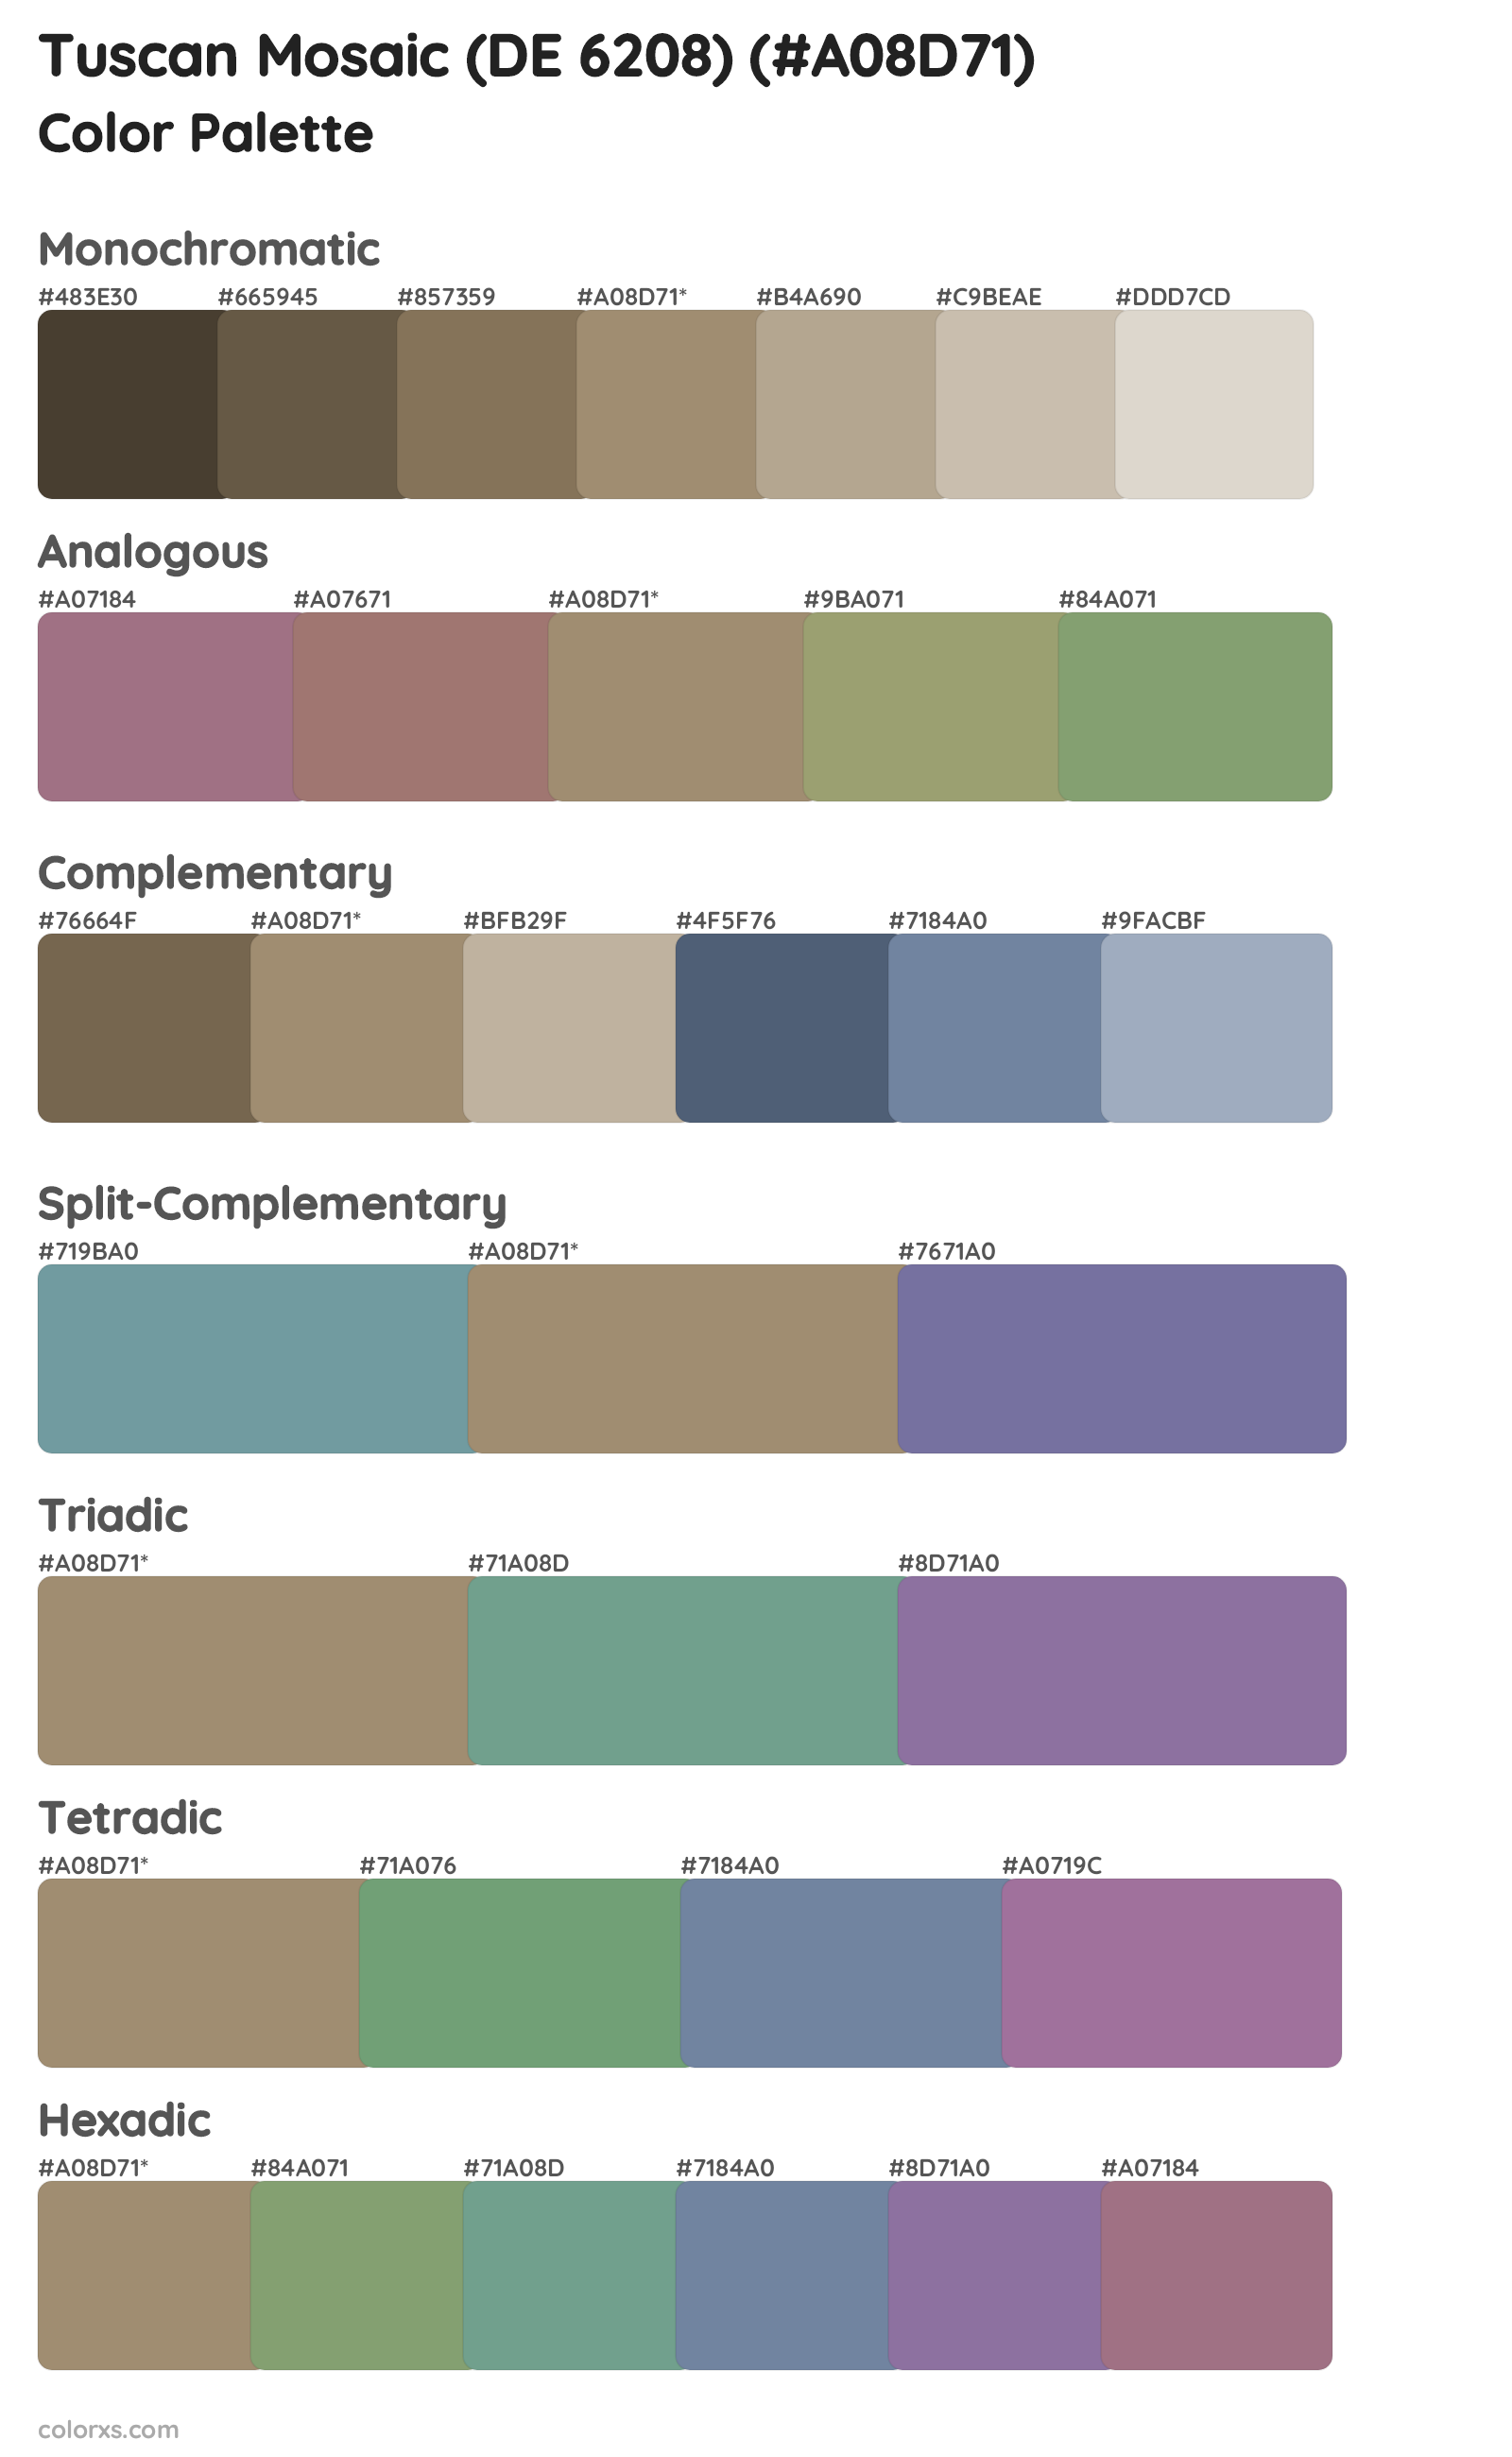 Tuscan Mosaic (DE 6208) Color Scheme Palettes